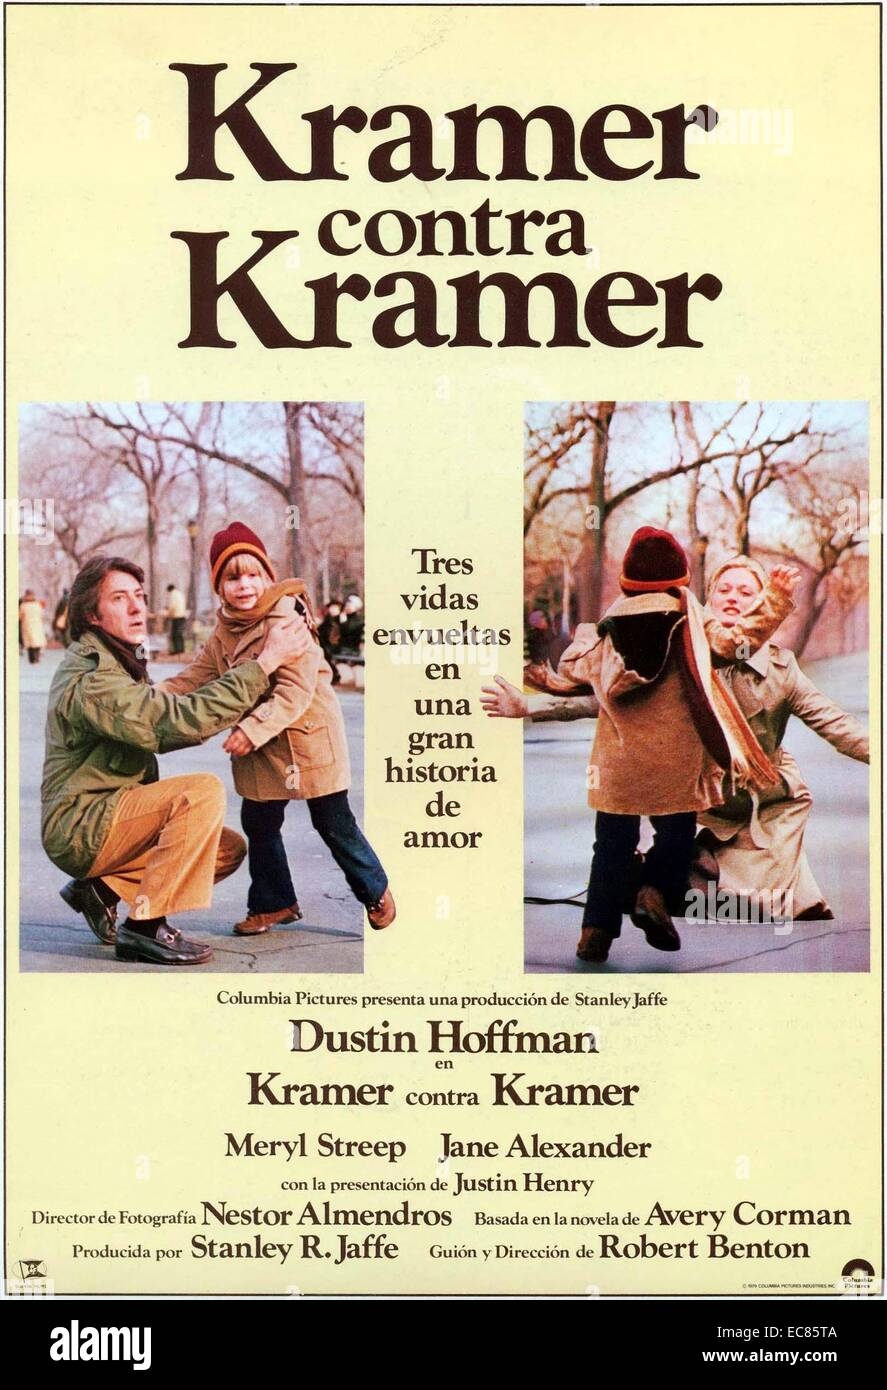 Kramer vs. Kramer est un film américain de 1979 Adapté par Robert Benton du roman d'Avery Corman, et réalisé par Benton. Le film raconte l'histoire d'un couple marié, le divorce et son impact sur tout le monde ; y compris le jeune fils du couple. (Dustin Hoffman) est un bourreau directeur de publicité qui vient d'être attribué un nouveau et très important de tenir compte. Ted arrive à la maison et partage la bonne nouvelle avec sa femme Joanna (Meryl Streep) Banque D'Images